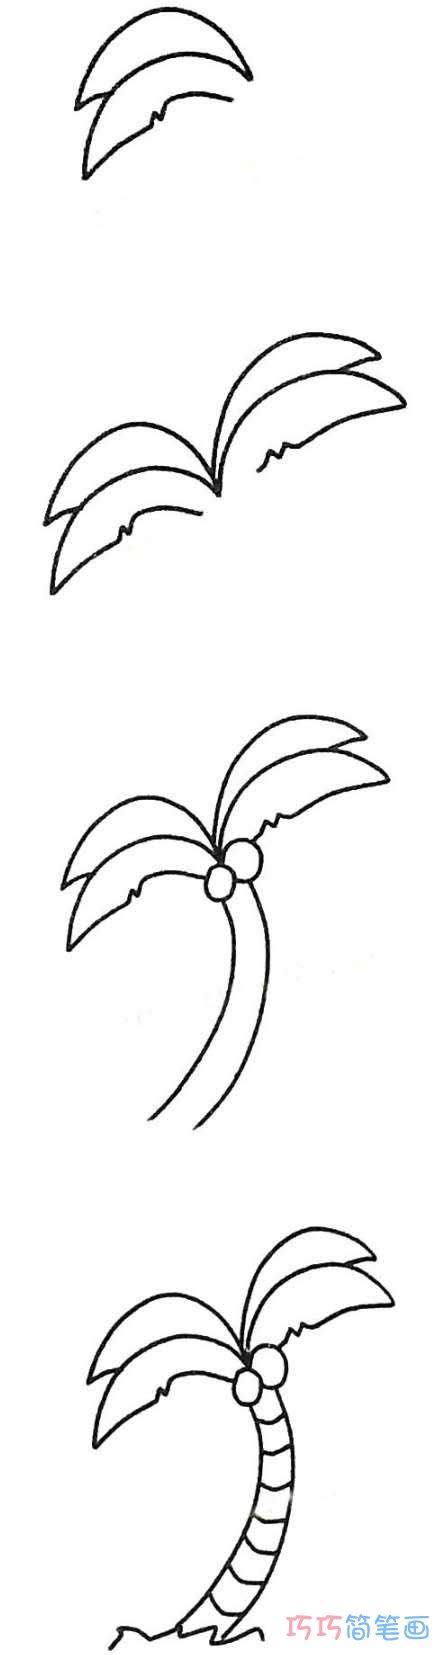 幼儿简笔画椰子树的画法步骤图简单 - 巧巧简笔画